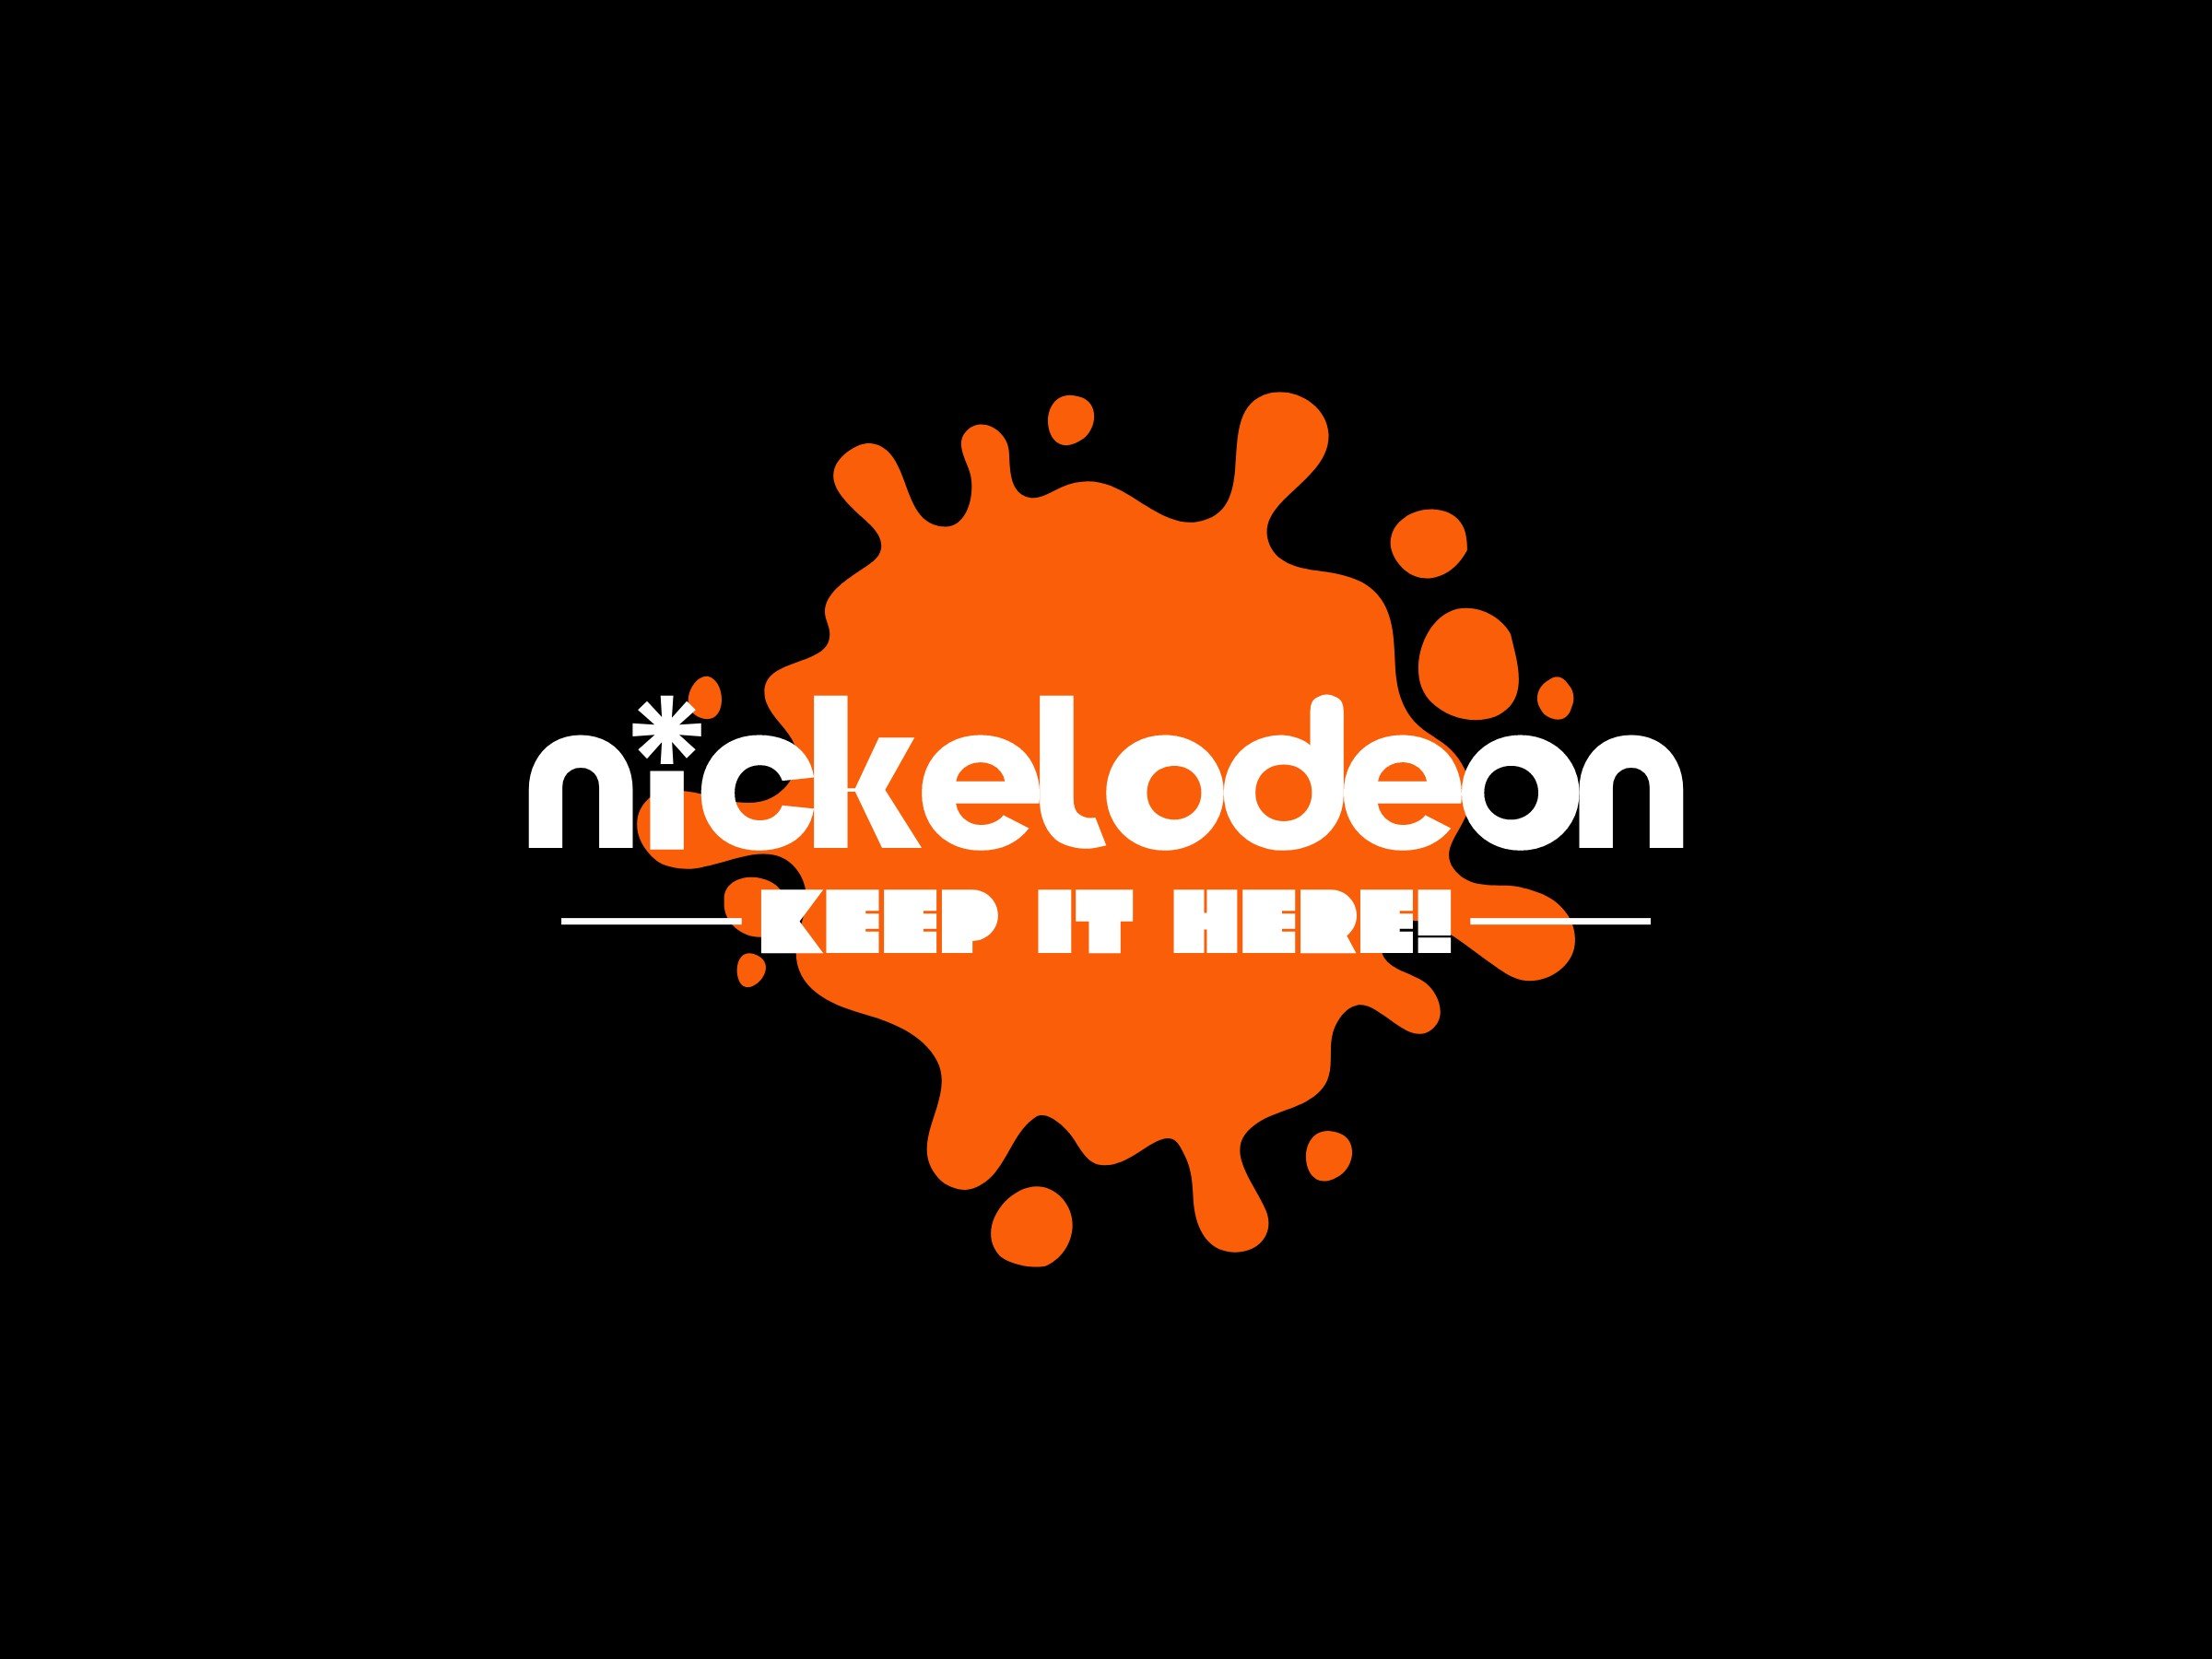 nickelodeon logo design